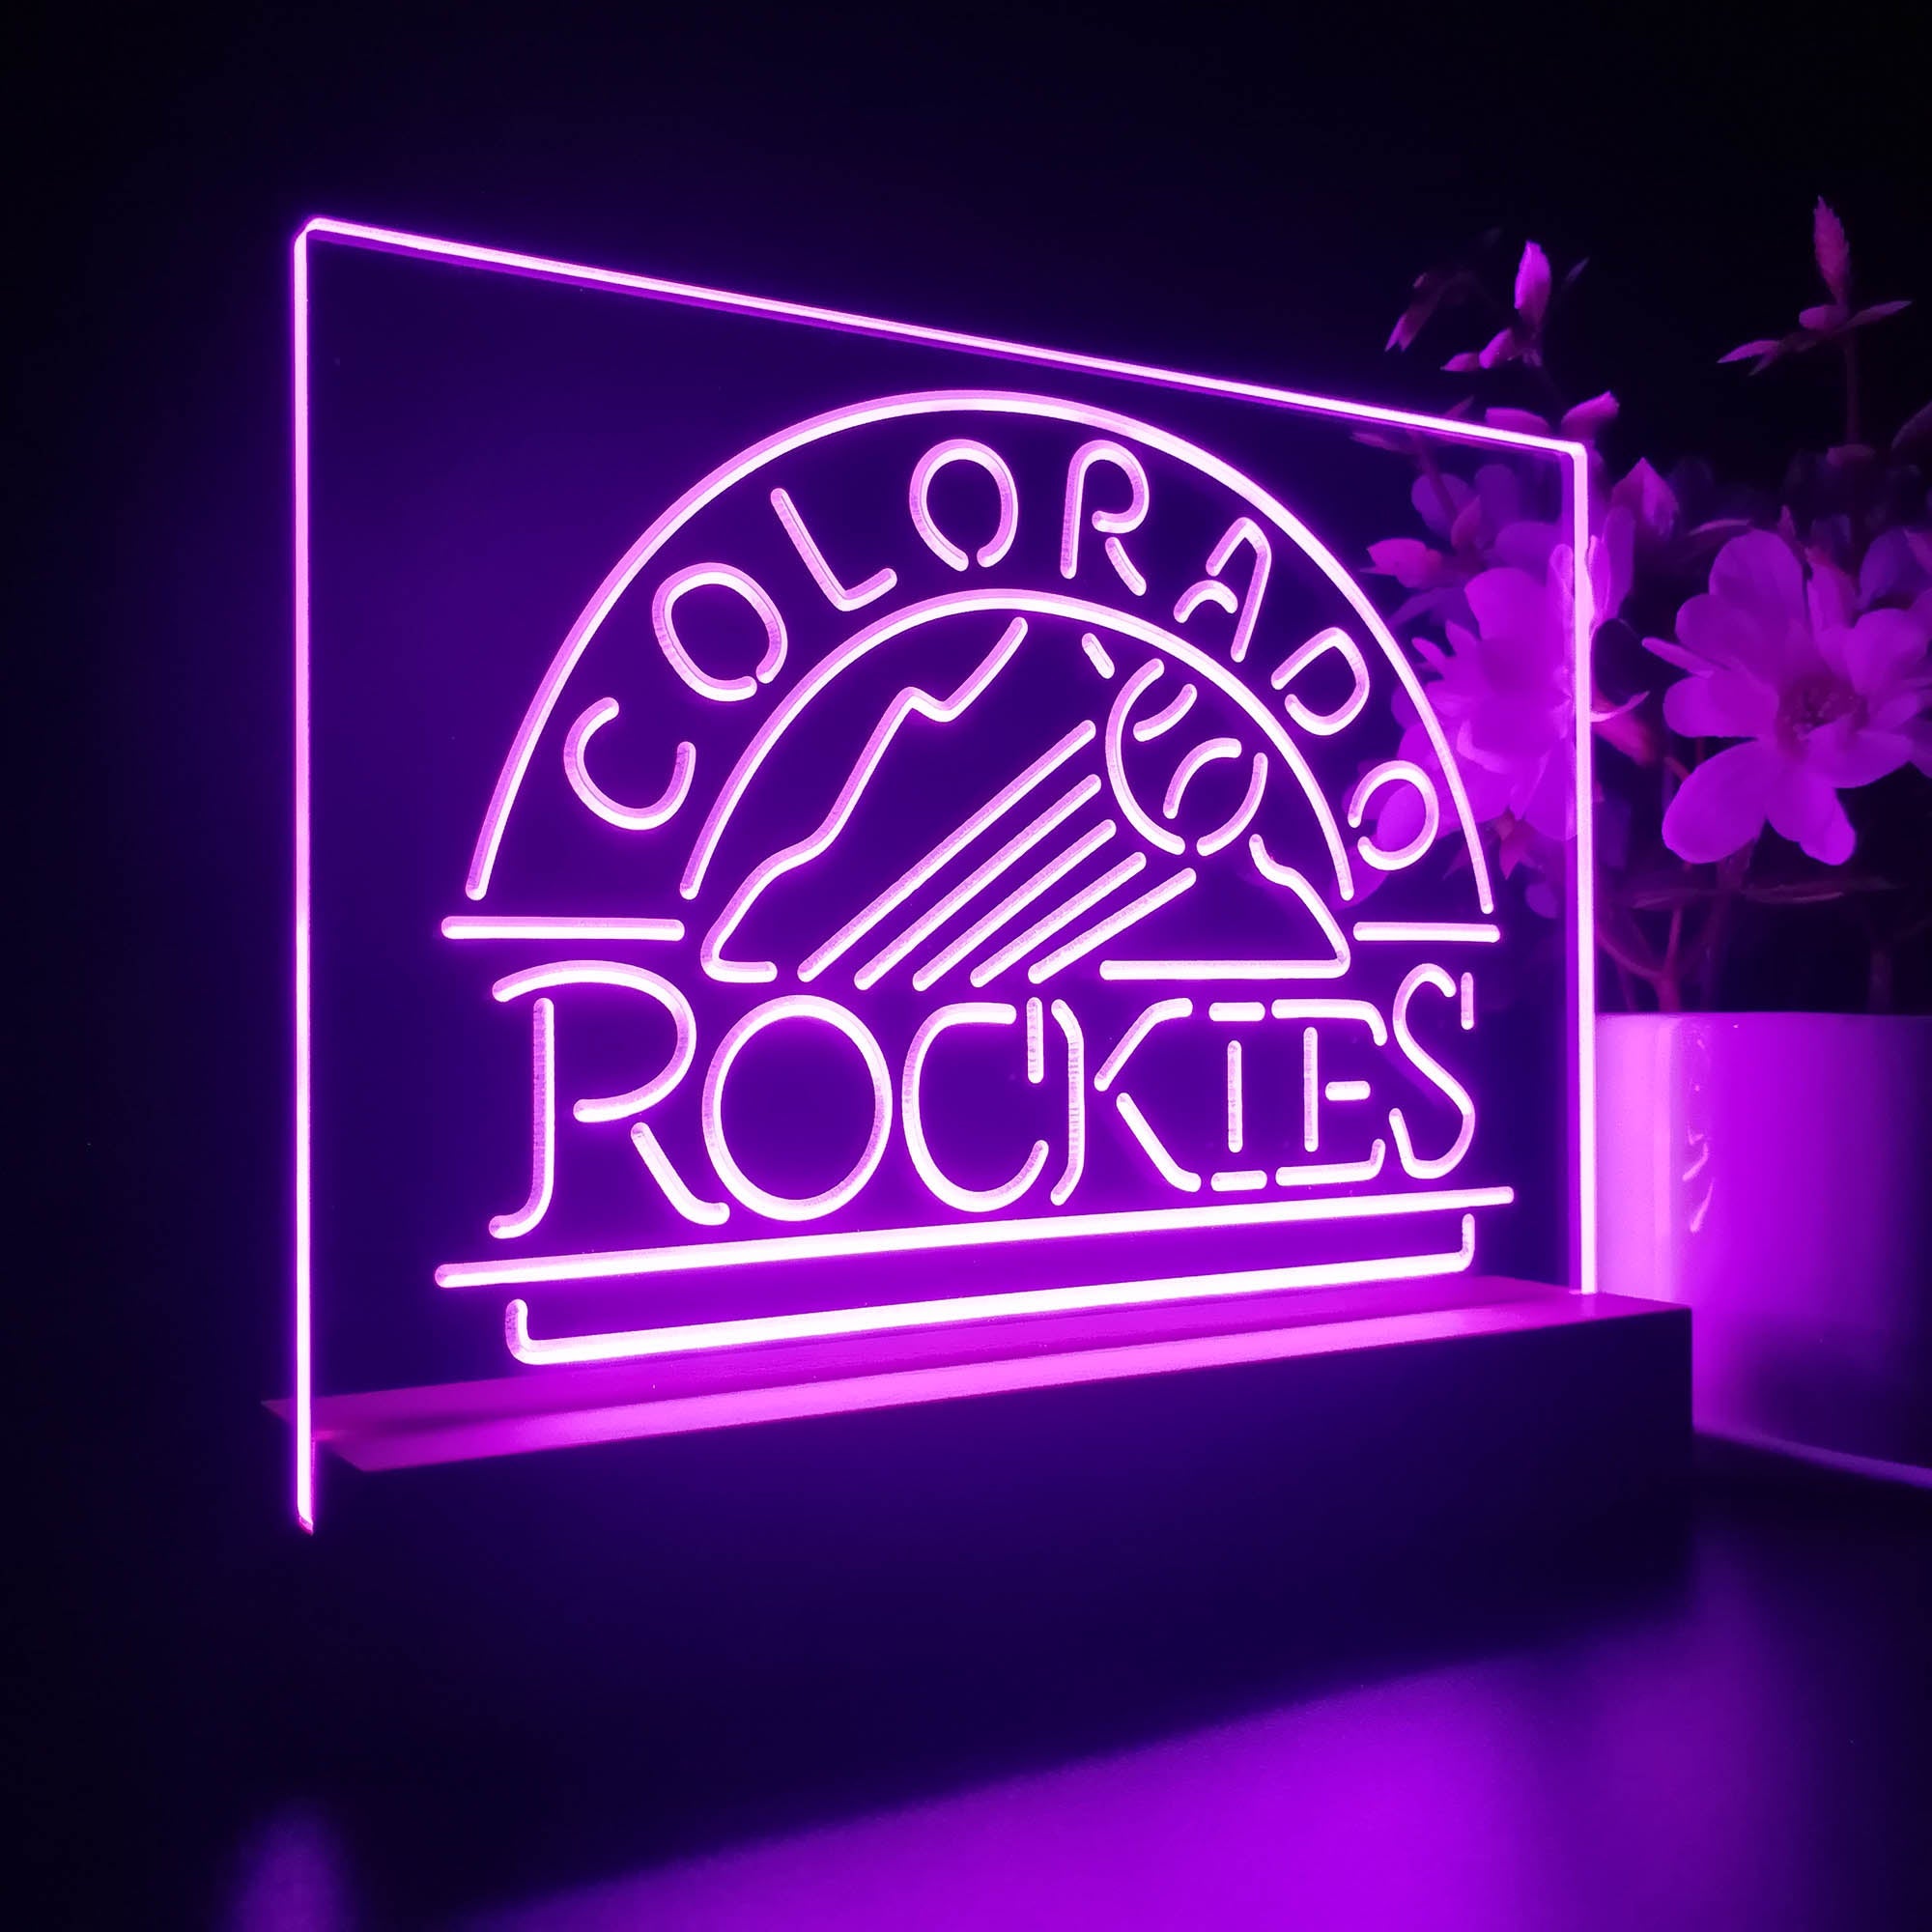 Colorado Rockies Neon Sign Pub Bar Lamp